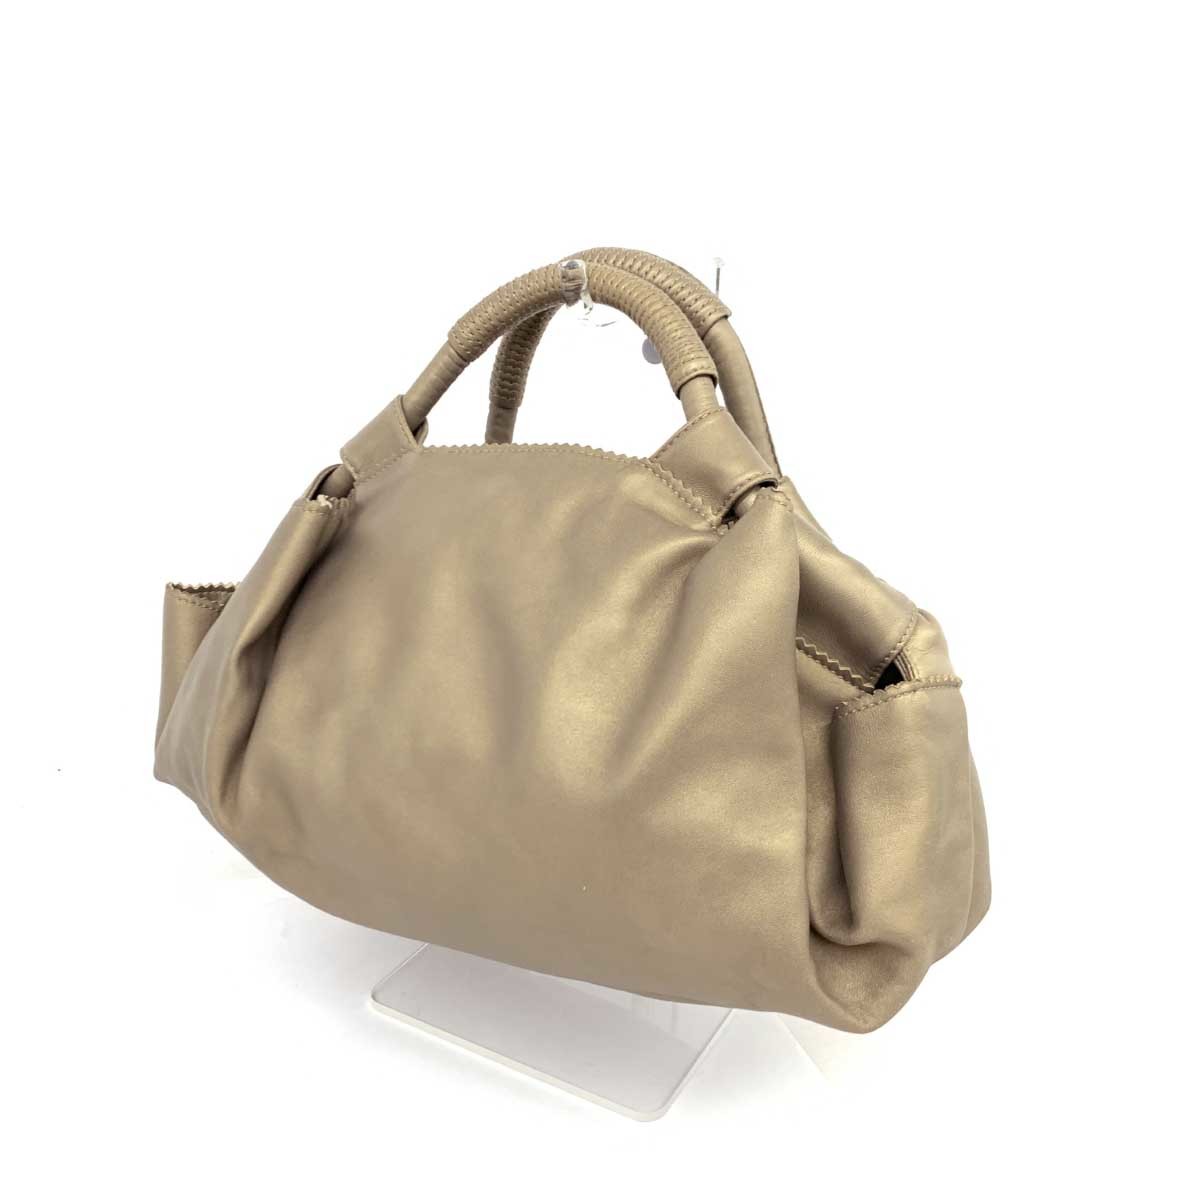 良好◆LOEWE ロエベ ハンドバッグ◆ ゴールドカラー ナッパレザー レディース bag 鞄_画像3